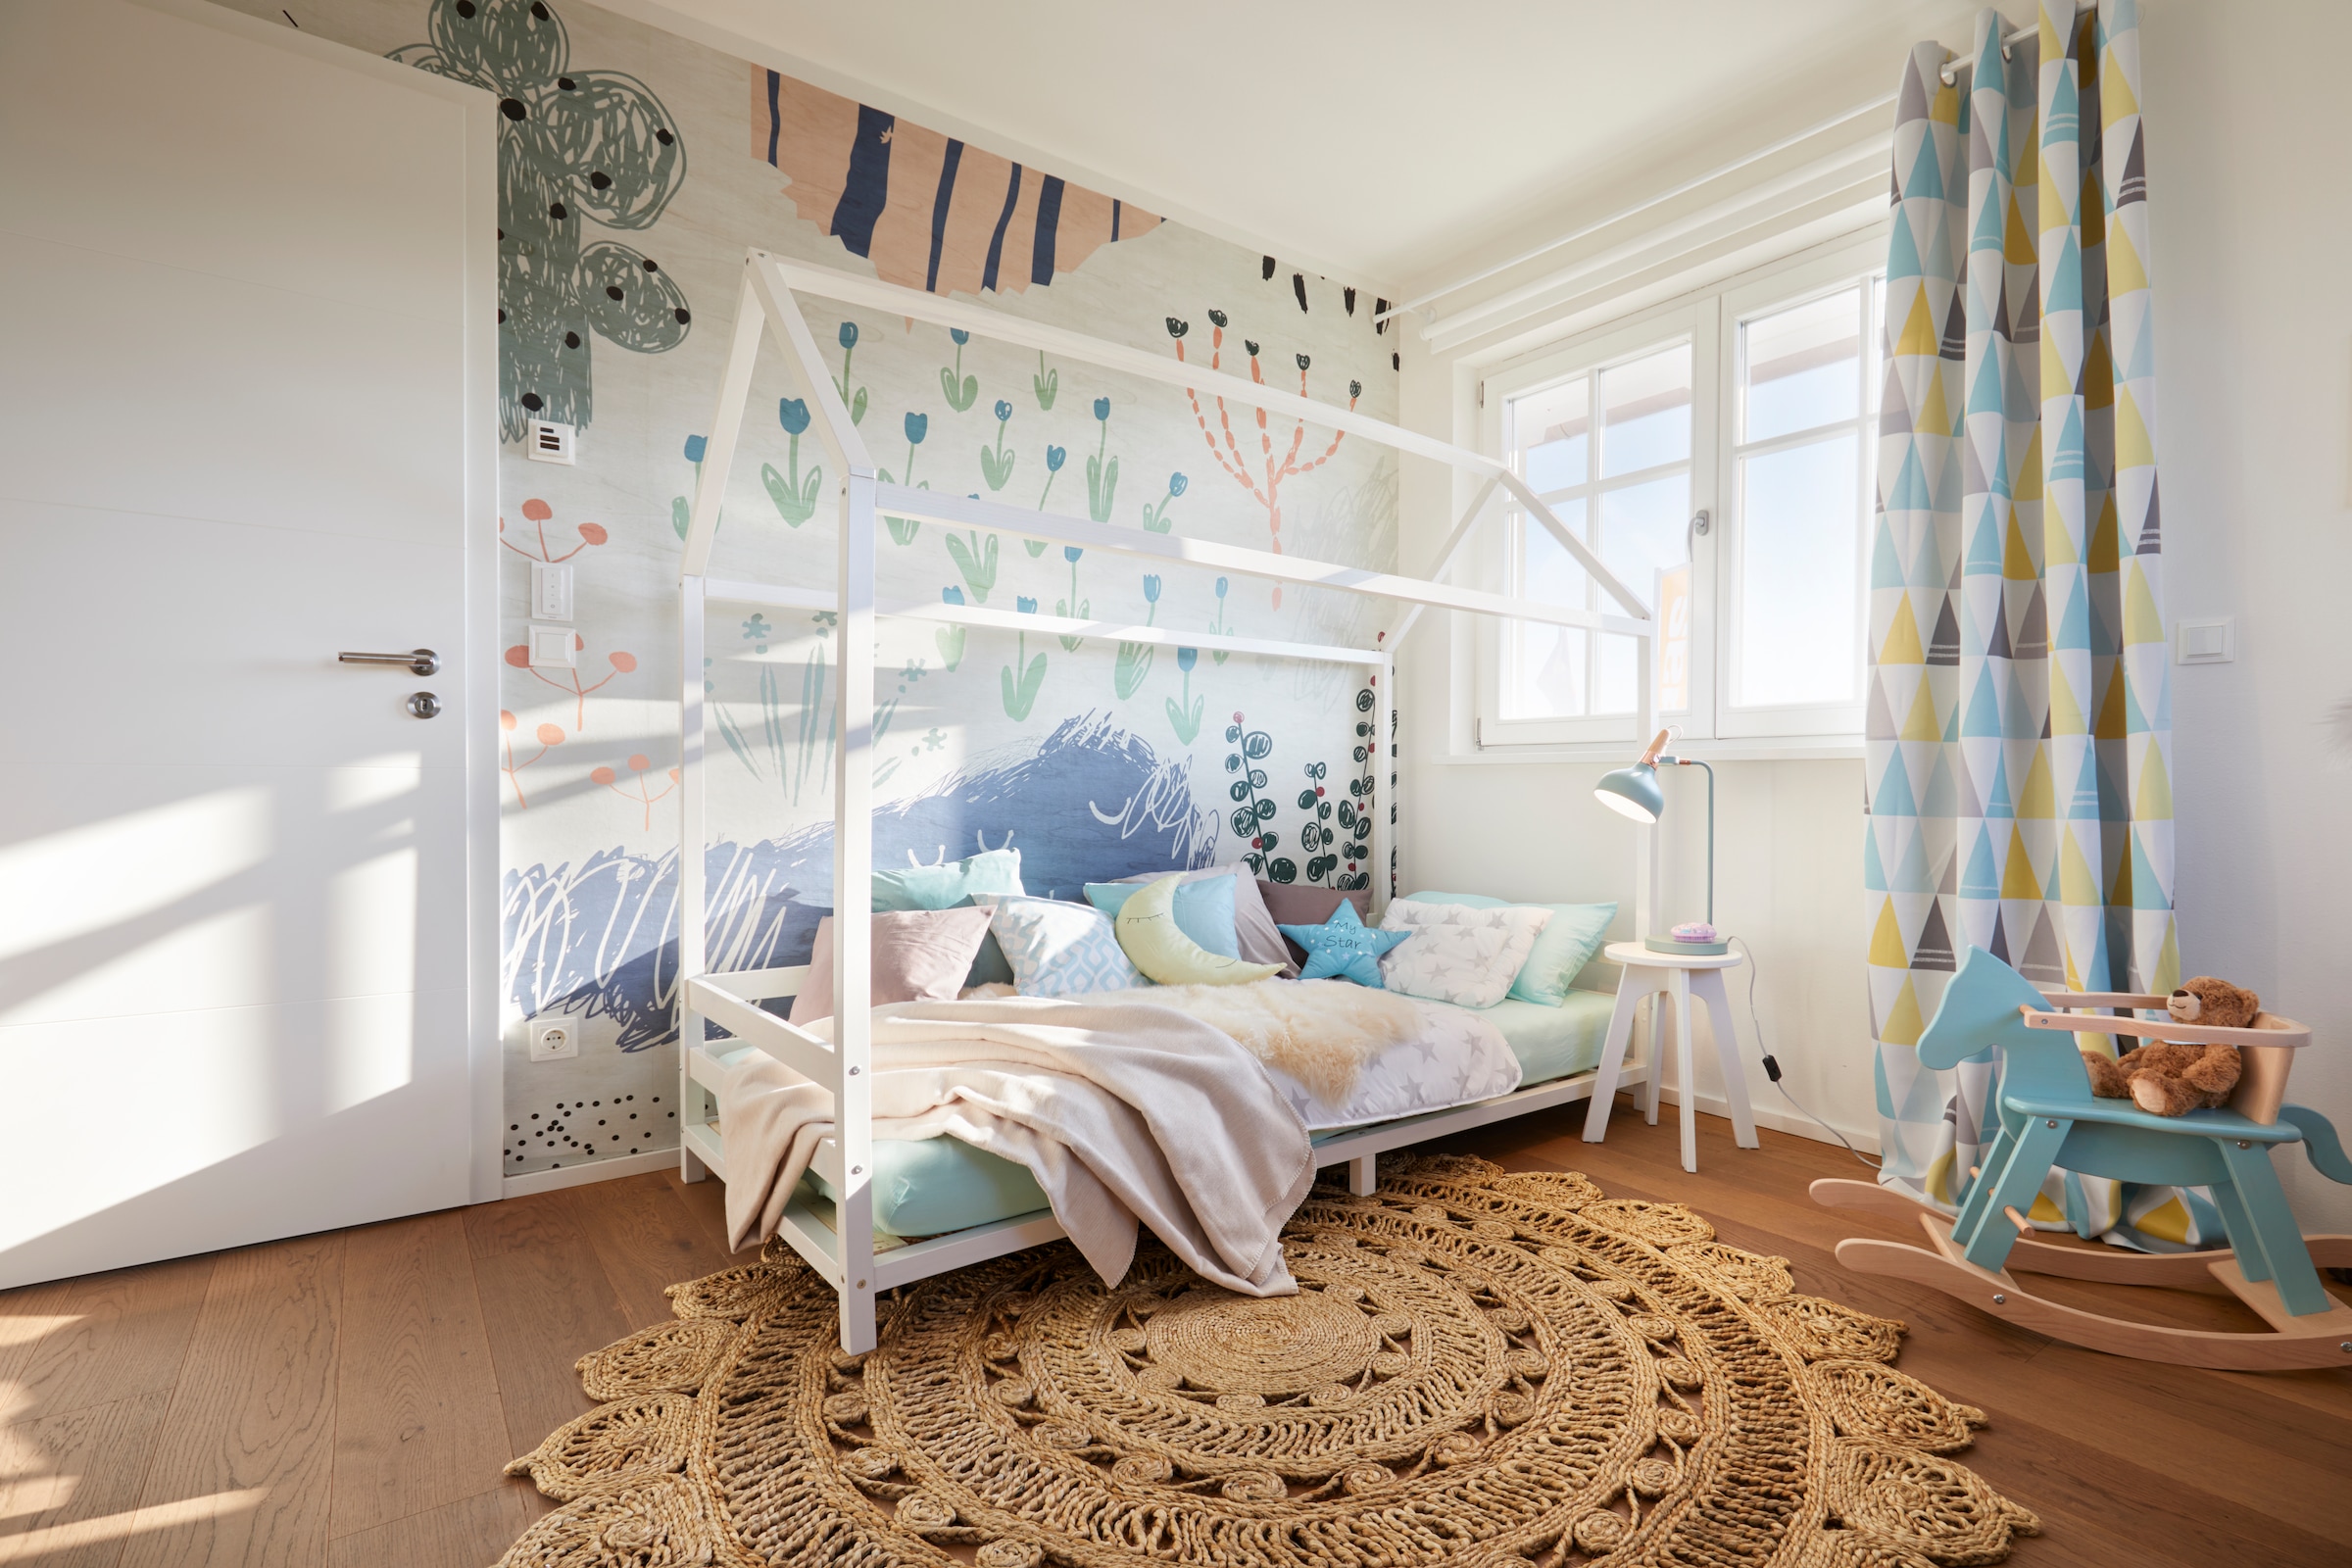 Lüttenhütt Kinderbett »Ellen«, Hausbett mit Reling aus Kiefernholz, zwei Farbvarianten, Breite 208 cm